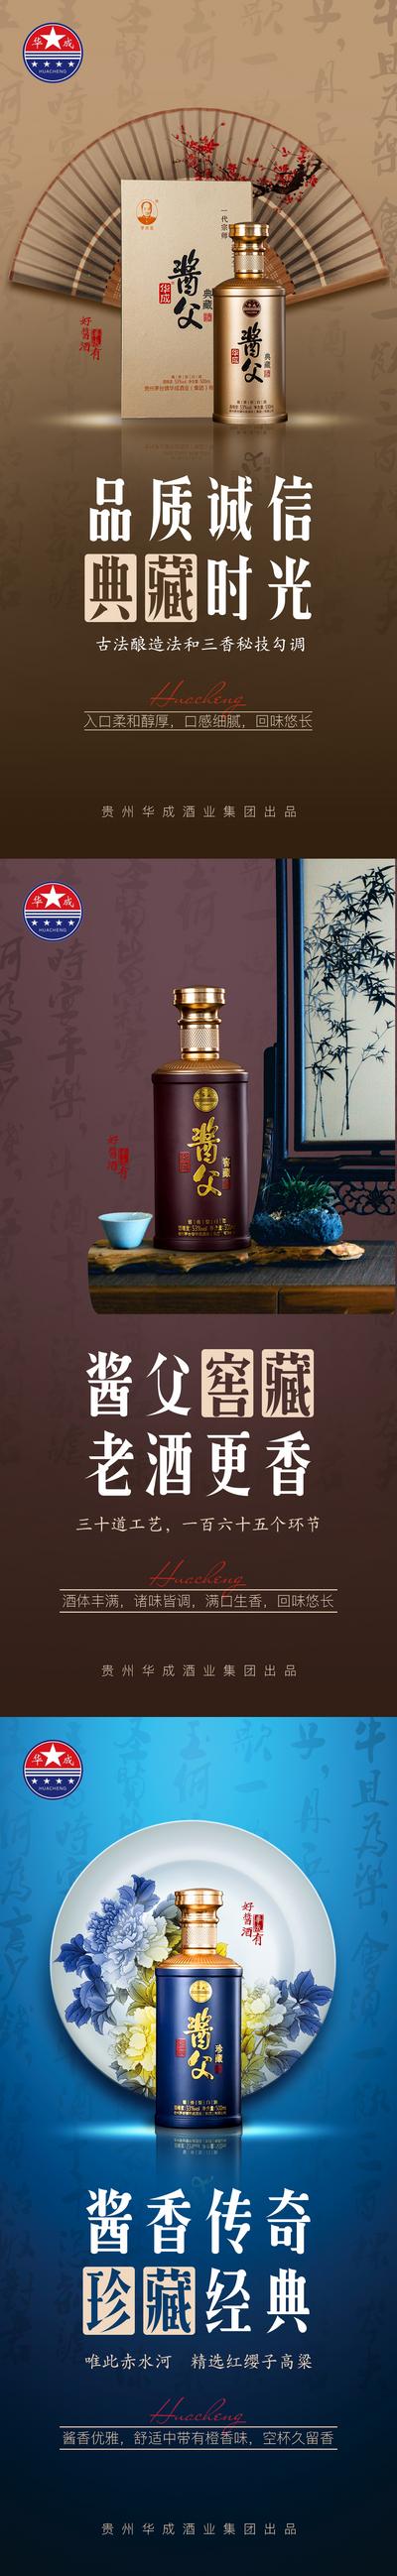 南门网 海报 白酒 典藏 桌子 扇子 瓷盘 中式 中国风